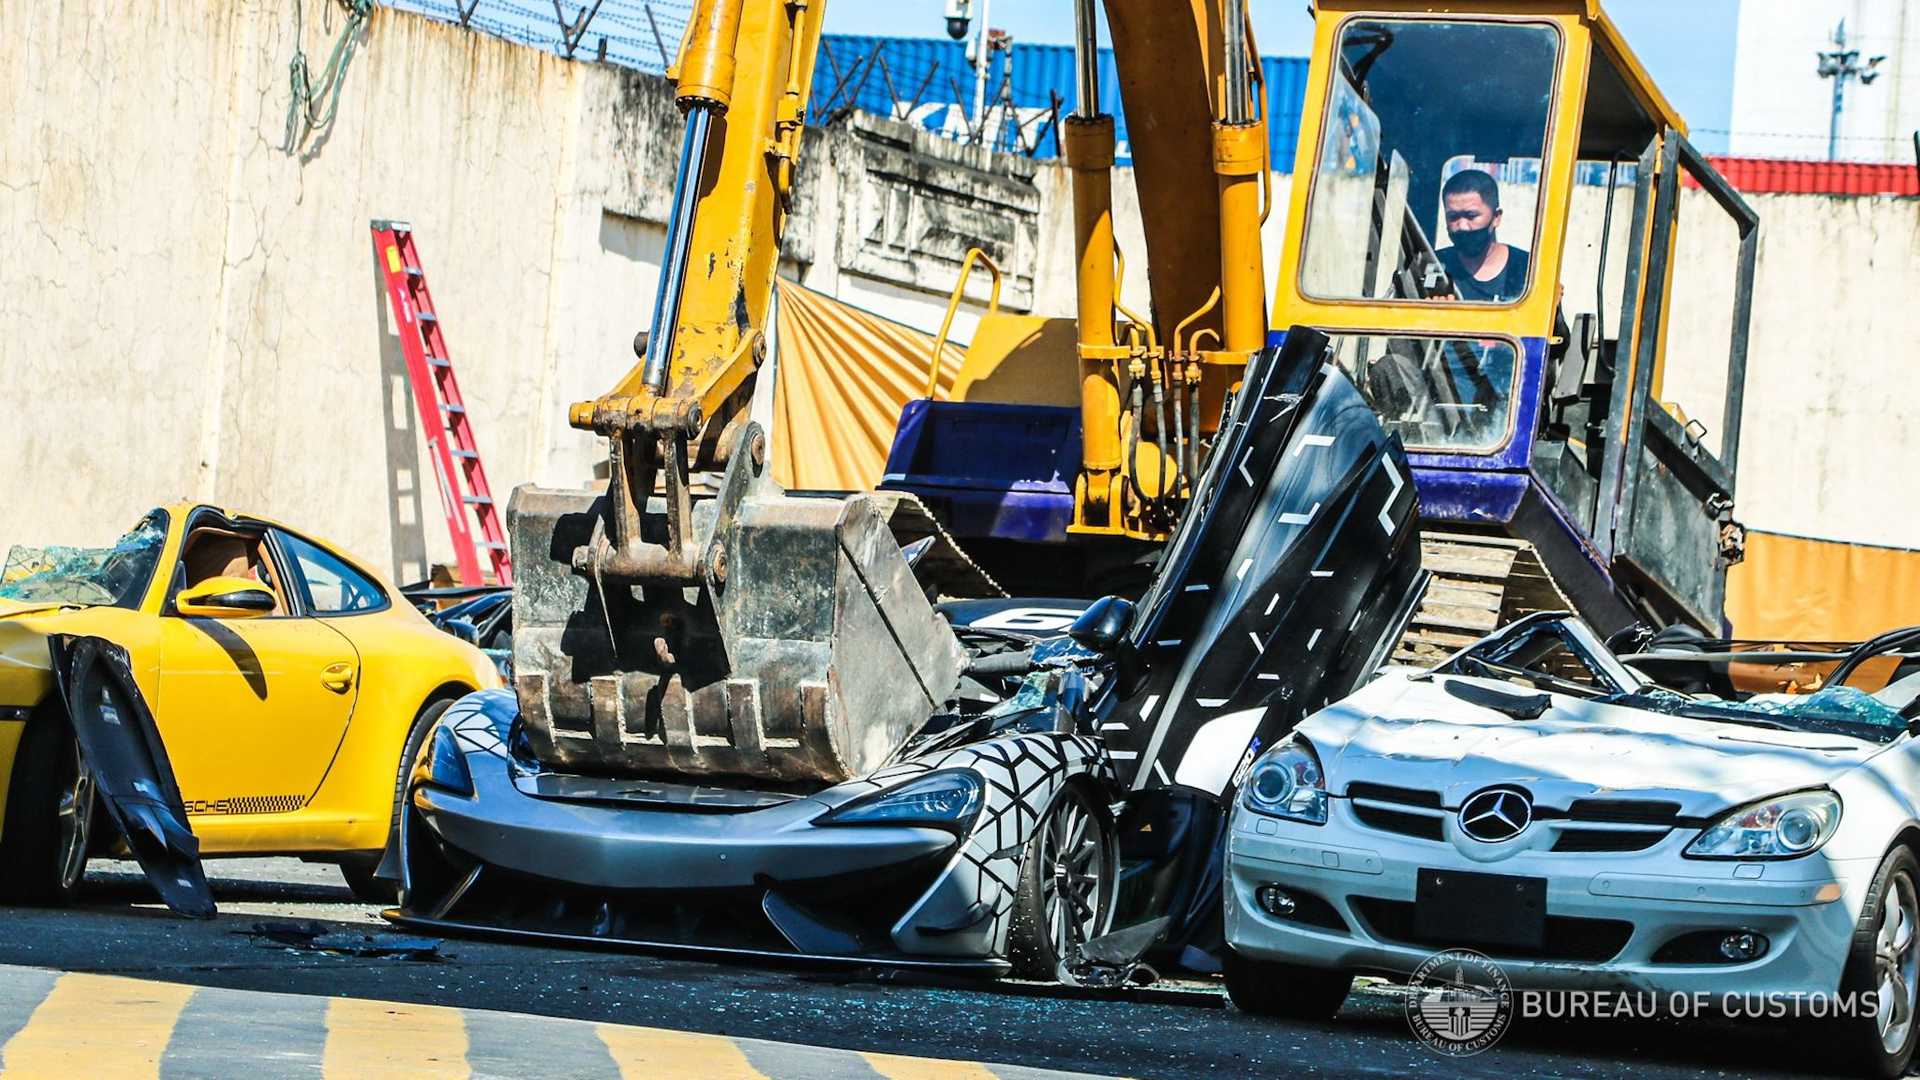 الفلبين تدمر 21 سيارة بقيمة 4.1 مليون ريال لردع المهربين “فيديو”